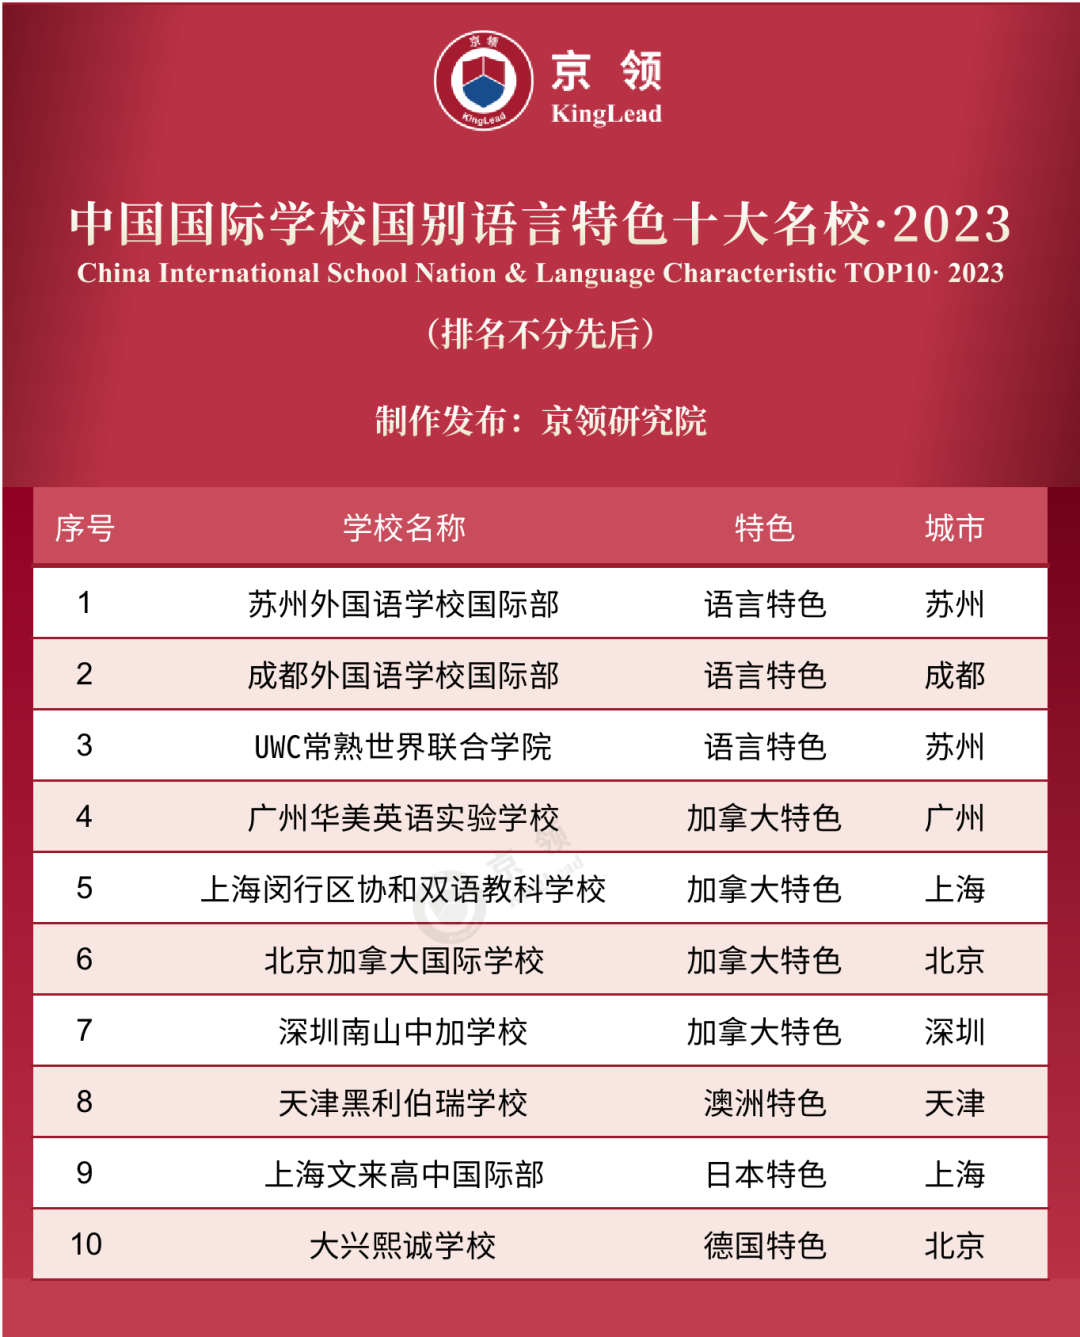 京领2023中国国际学校特色榜发布 英美方向国际学校哪家强  数据 第12张